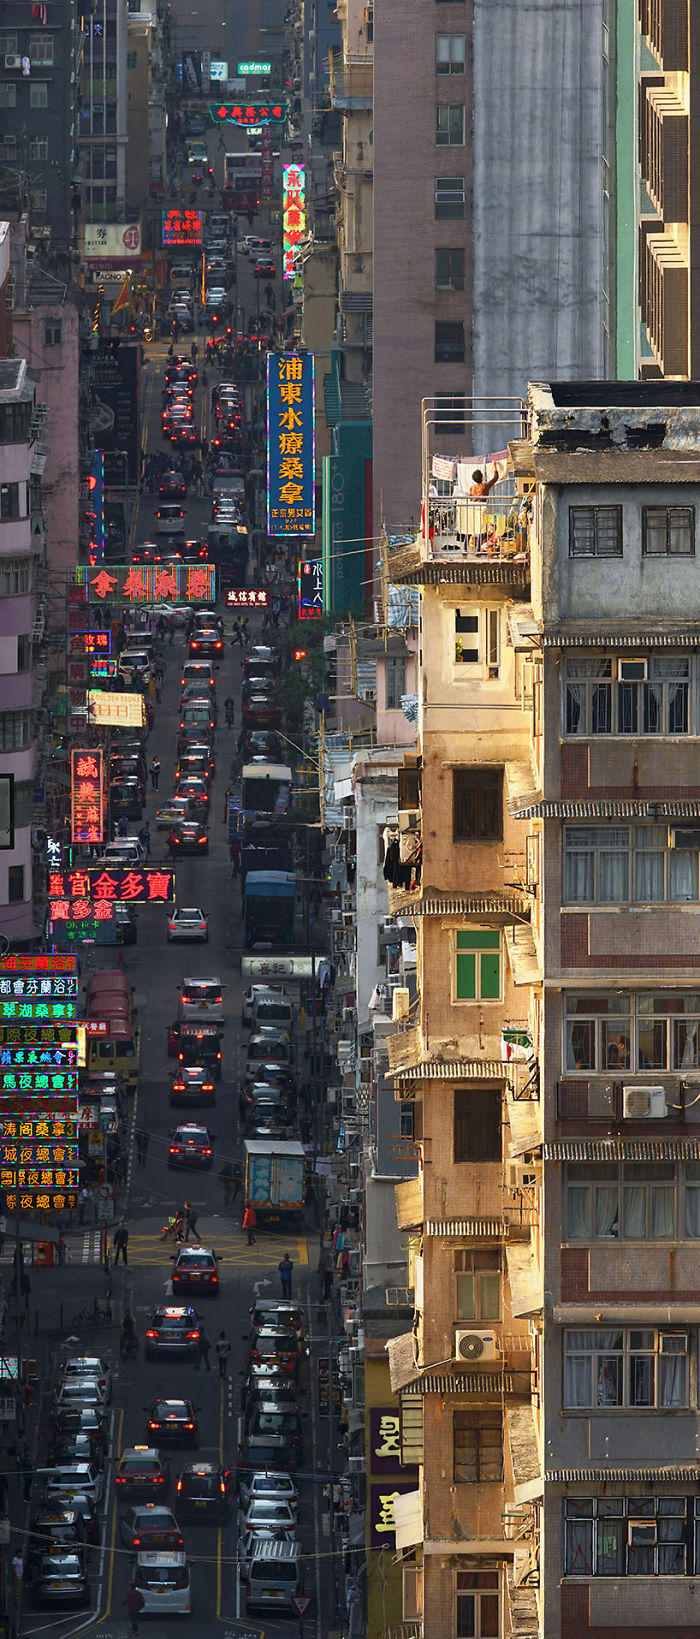 5ae2eb0c493a5 Breathtaking photos of Hong Kong rooftops from other rooftops 5adef99d62e07  700 - 12 coisas interessantes este fotógrafo capturado nos telhados de Hong Kong